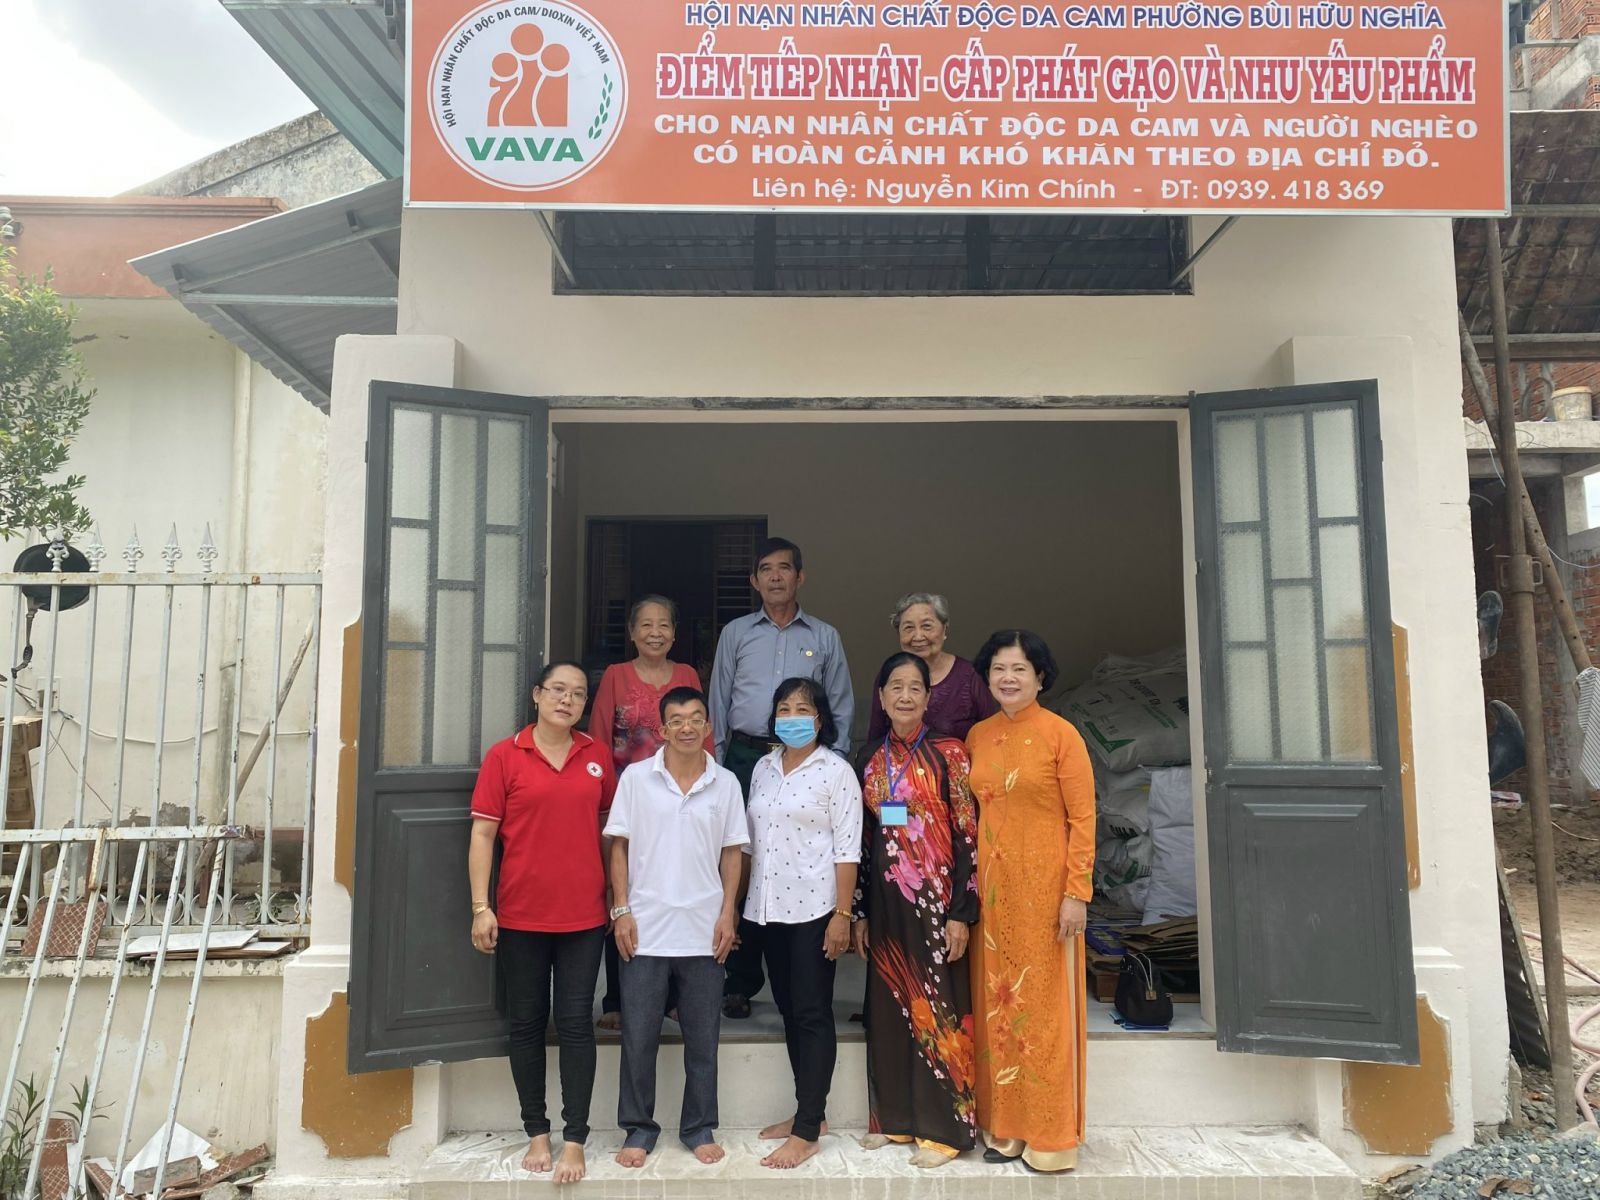 Hội Nạn nhân CĐDC/ Dioxin quận Bình Thủy, thành phố Cần Thơ triển khai thực hiện mô hình chăm sóc nạn nhân